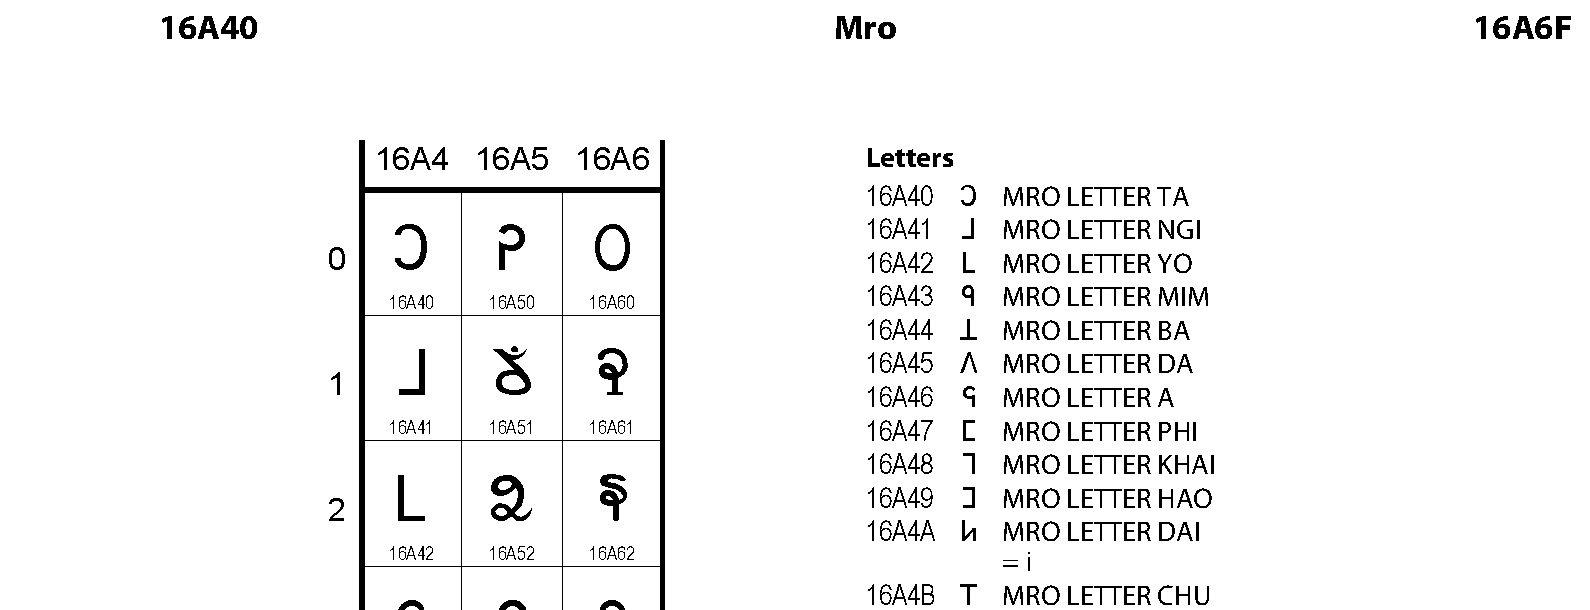 Unicode - Mro